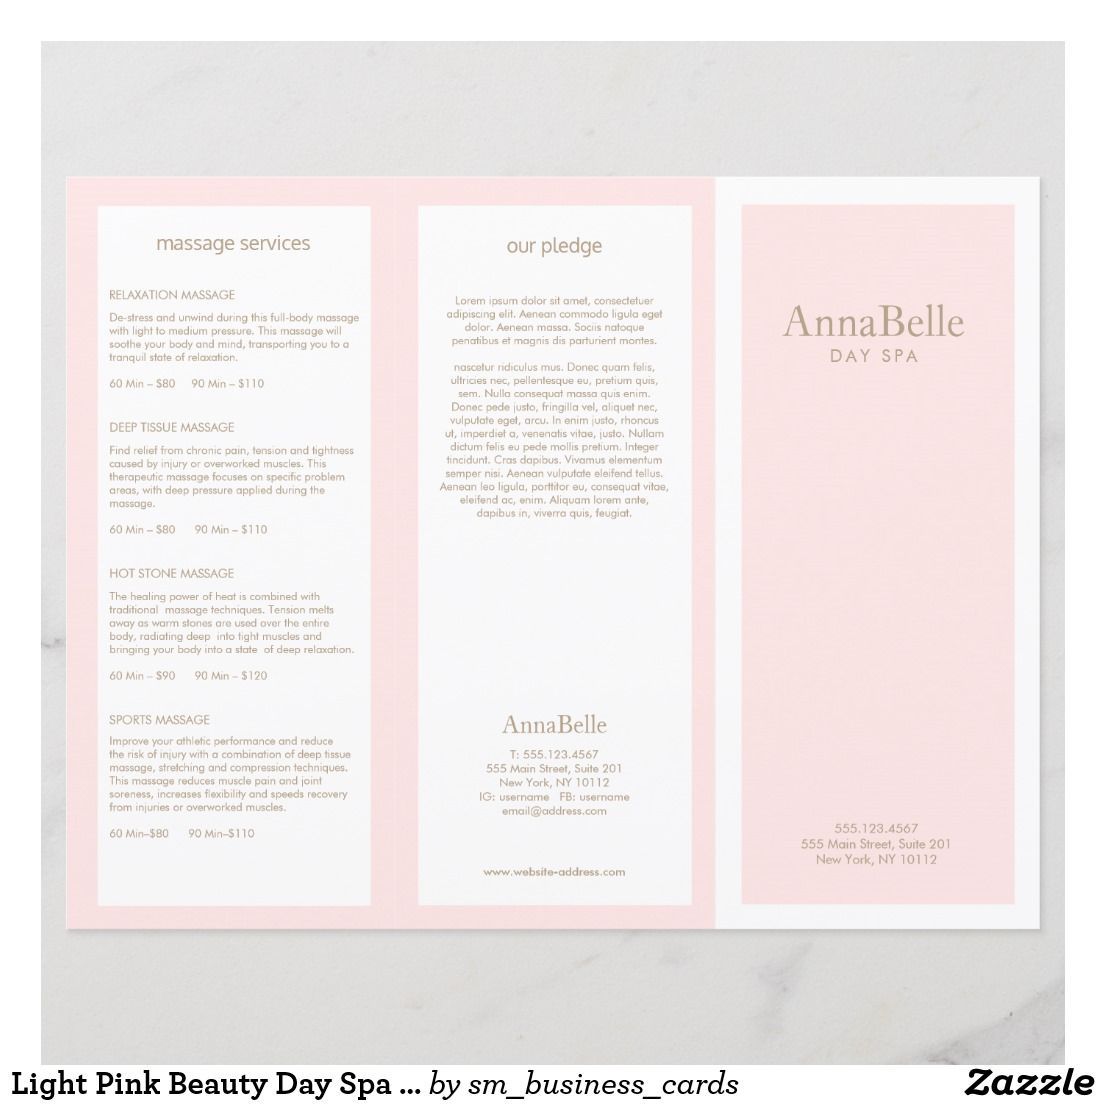 Light Pink Beauty Day Spa Salon TriFold Brochure | Zazzle.com - Light Pink Beauty Day Spa Salon TriFold Brochure | Zazzle.com -   13 beauty Salon brochure ideas